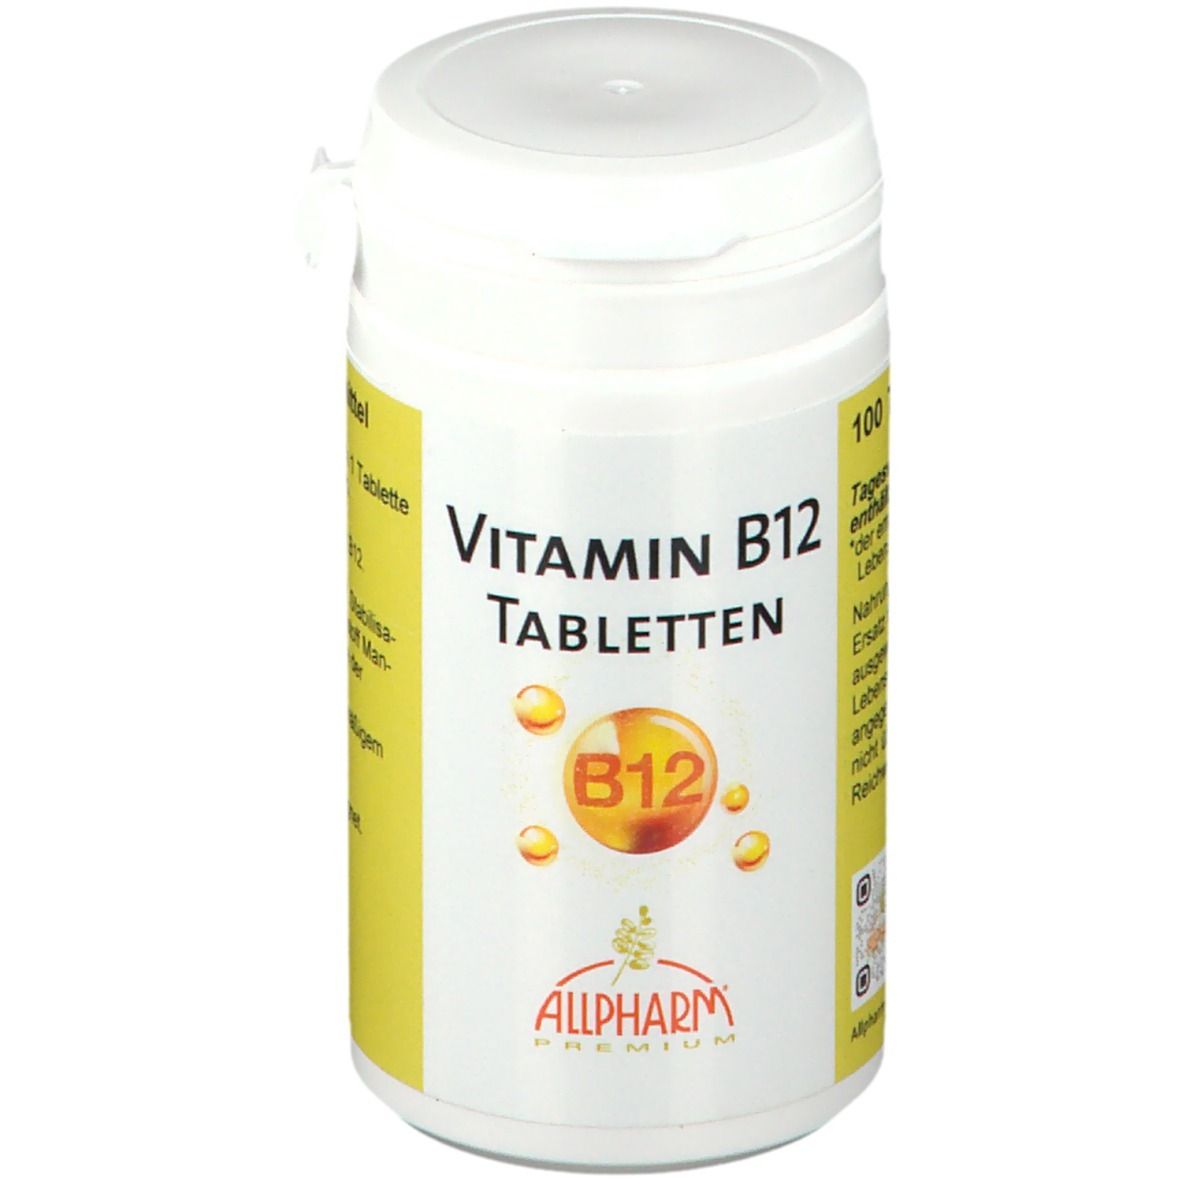 Image of ALLPHARM Vitamin B12 Tabletten Premium